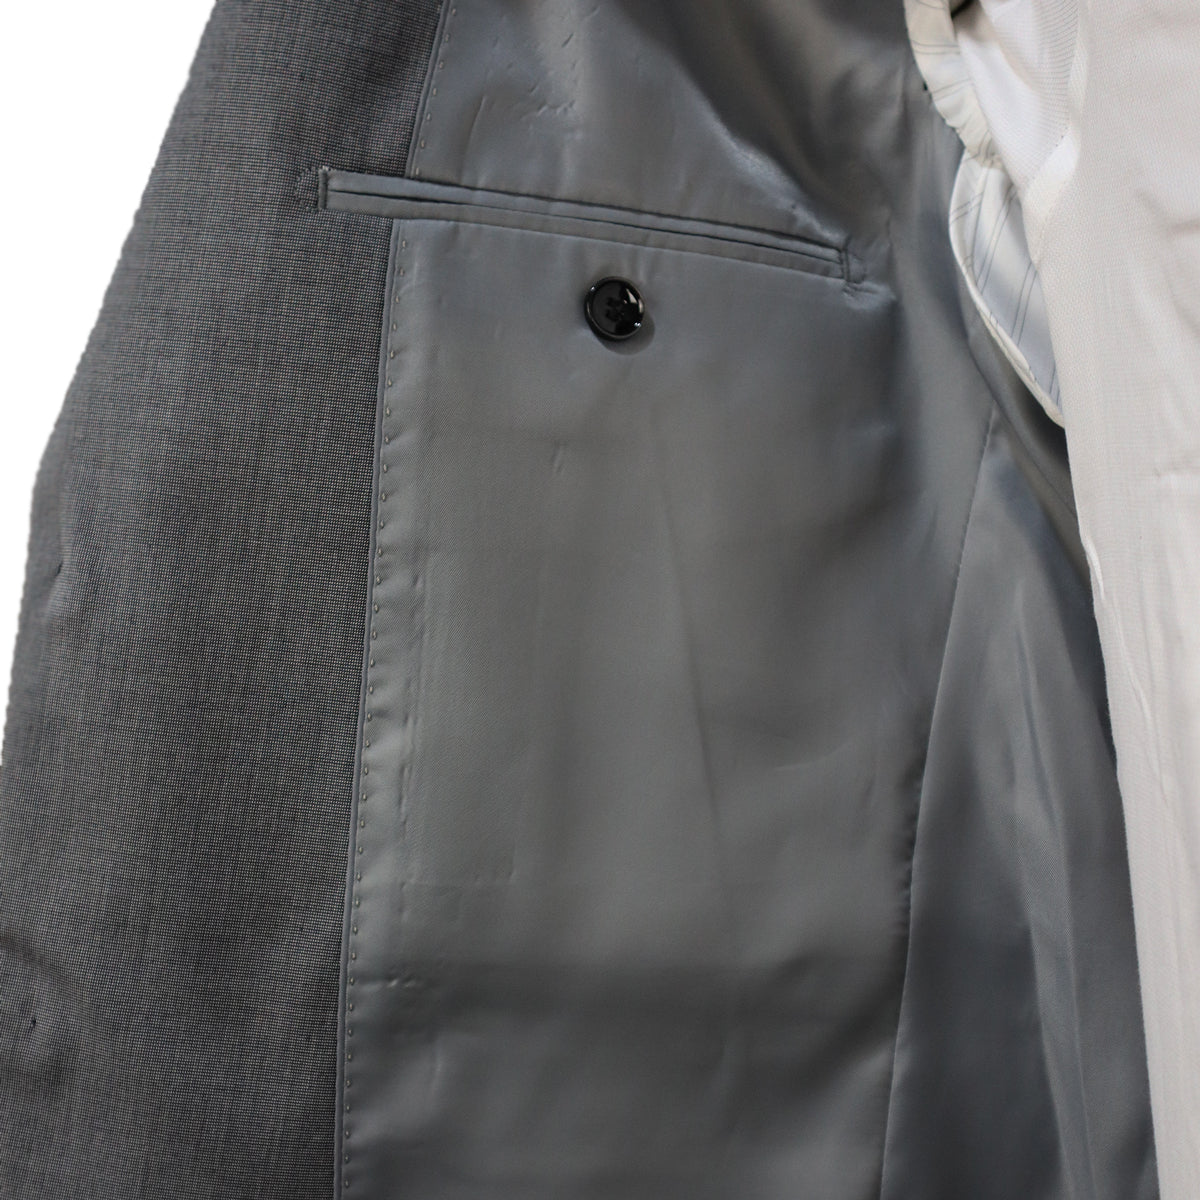 Κοστούμι Ανδρικό Γκρι Τερυλέν (Tery/Rayon/Spandex) Semi-Slim Fit 502627 1-GREY